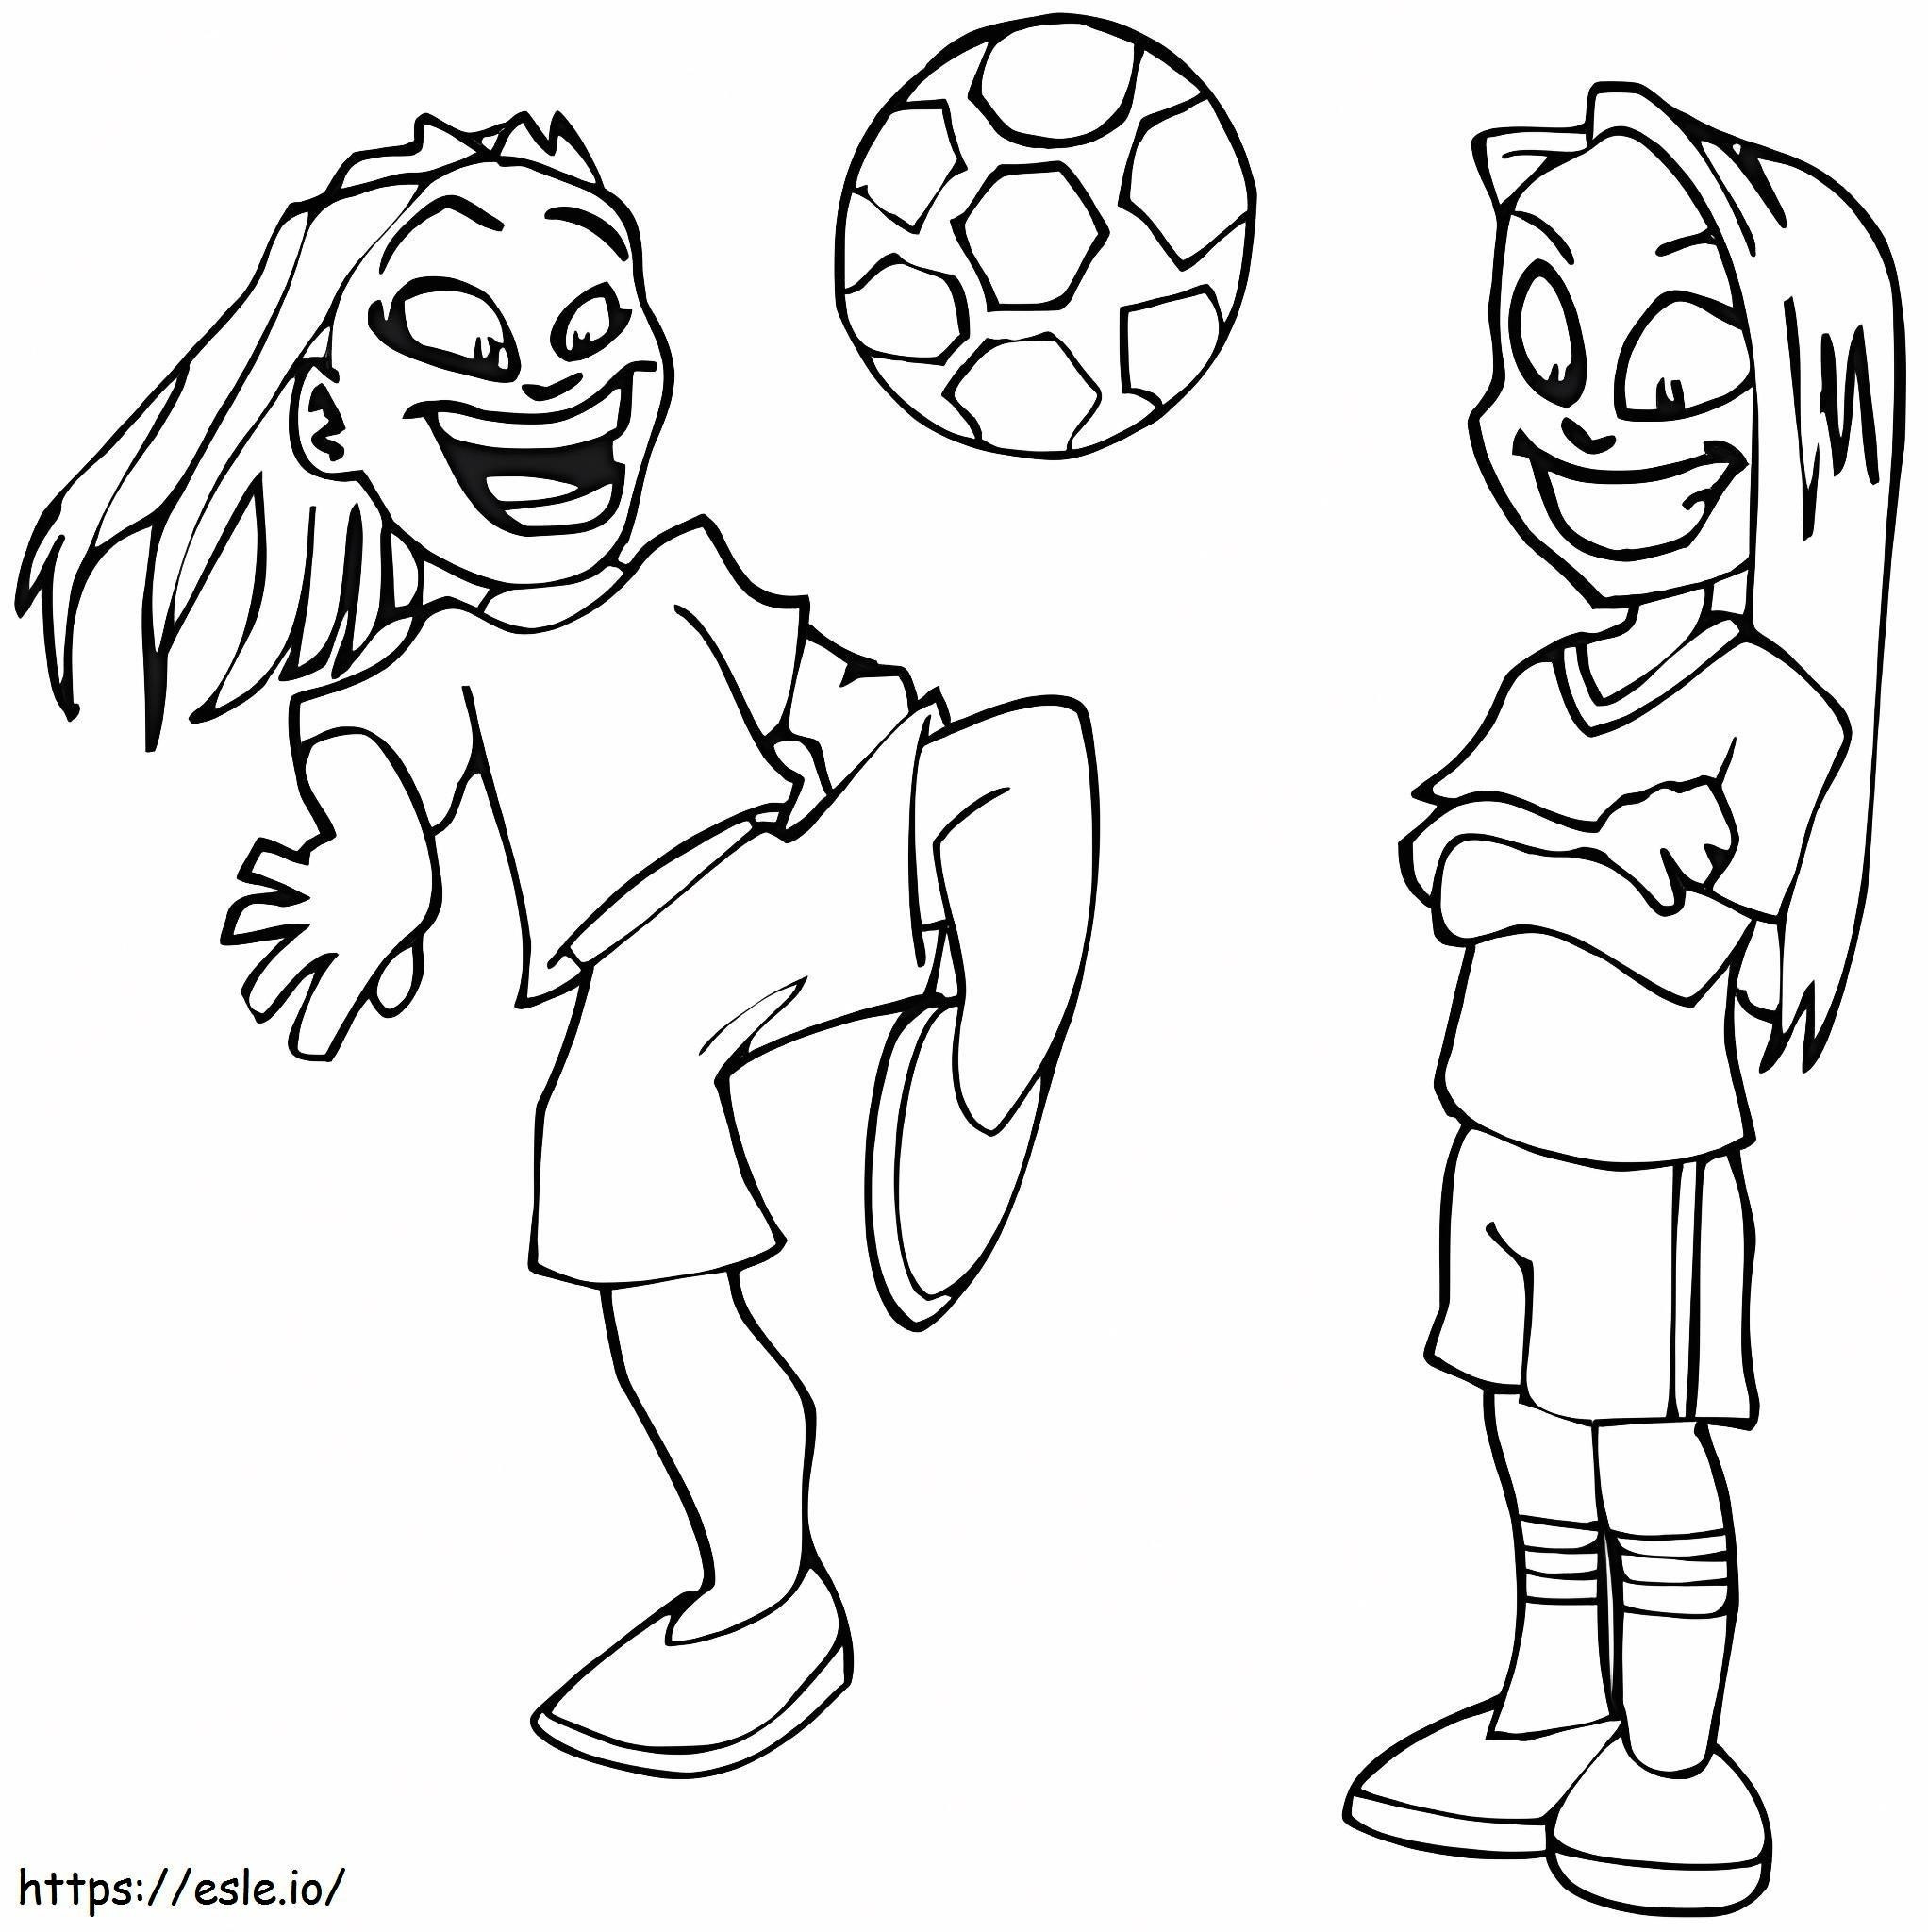 Iki Kız Futbol Oynuyor boyama